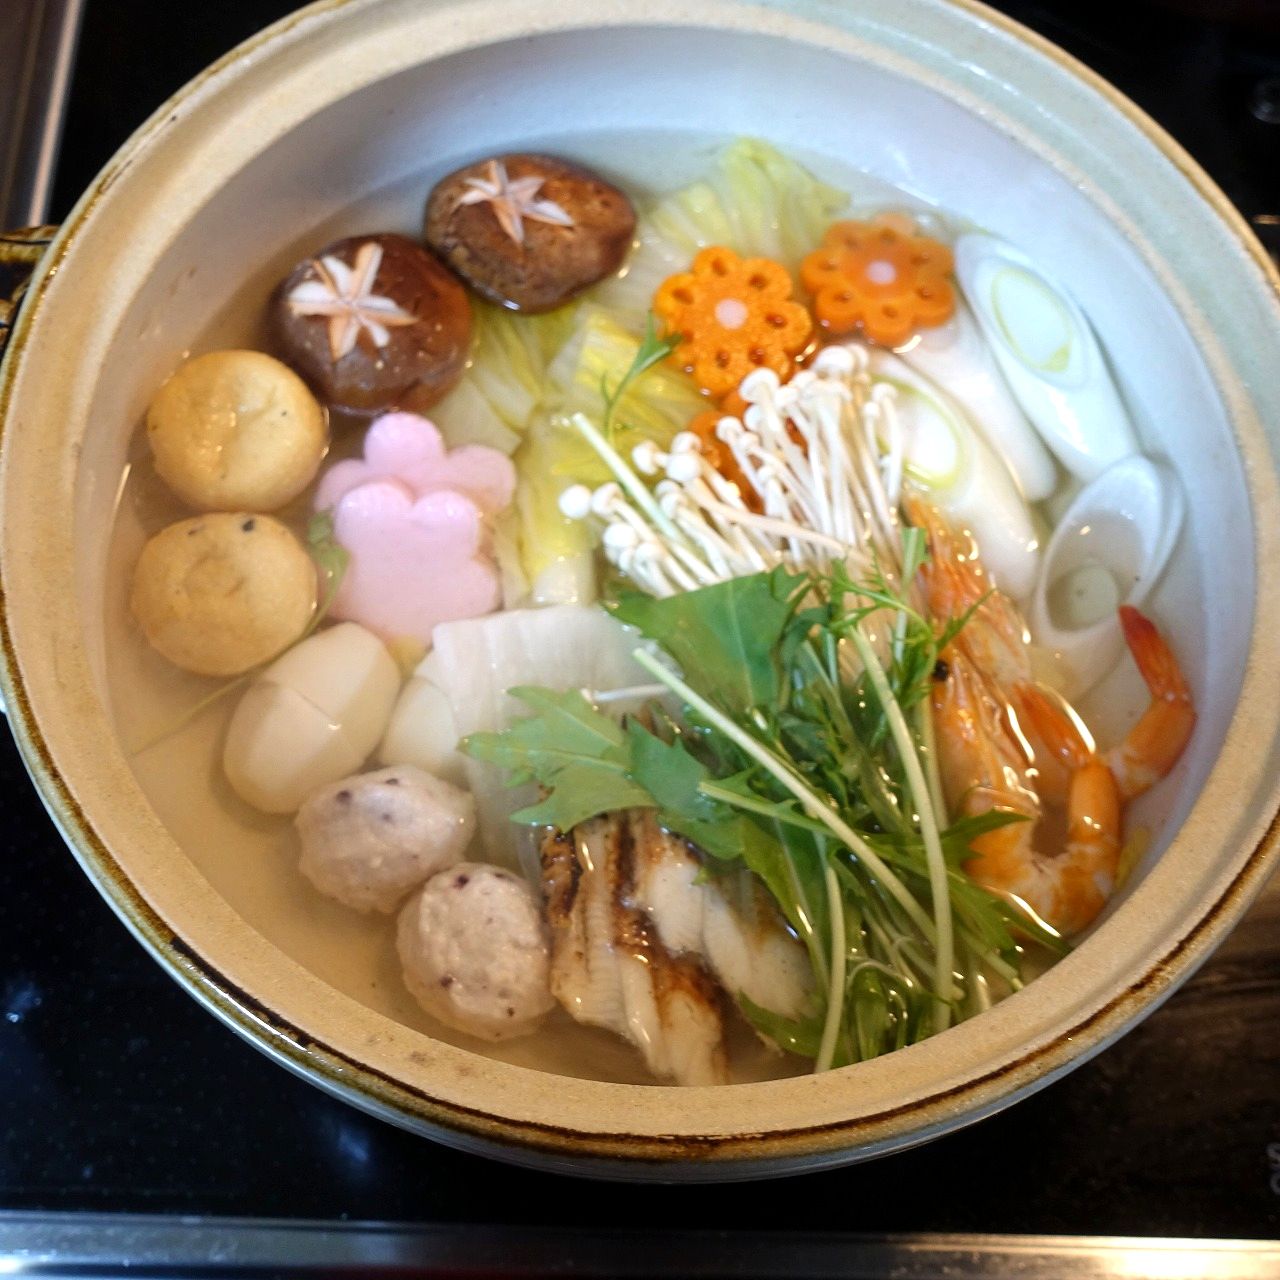 明石めで鯛やの鯛しゃぶセットを食べました@西明石ホテル・日本料理ぜんさく監修のお取り寄せ - 大阪・奈良グルメのブログ「ミシュランごっこ。」